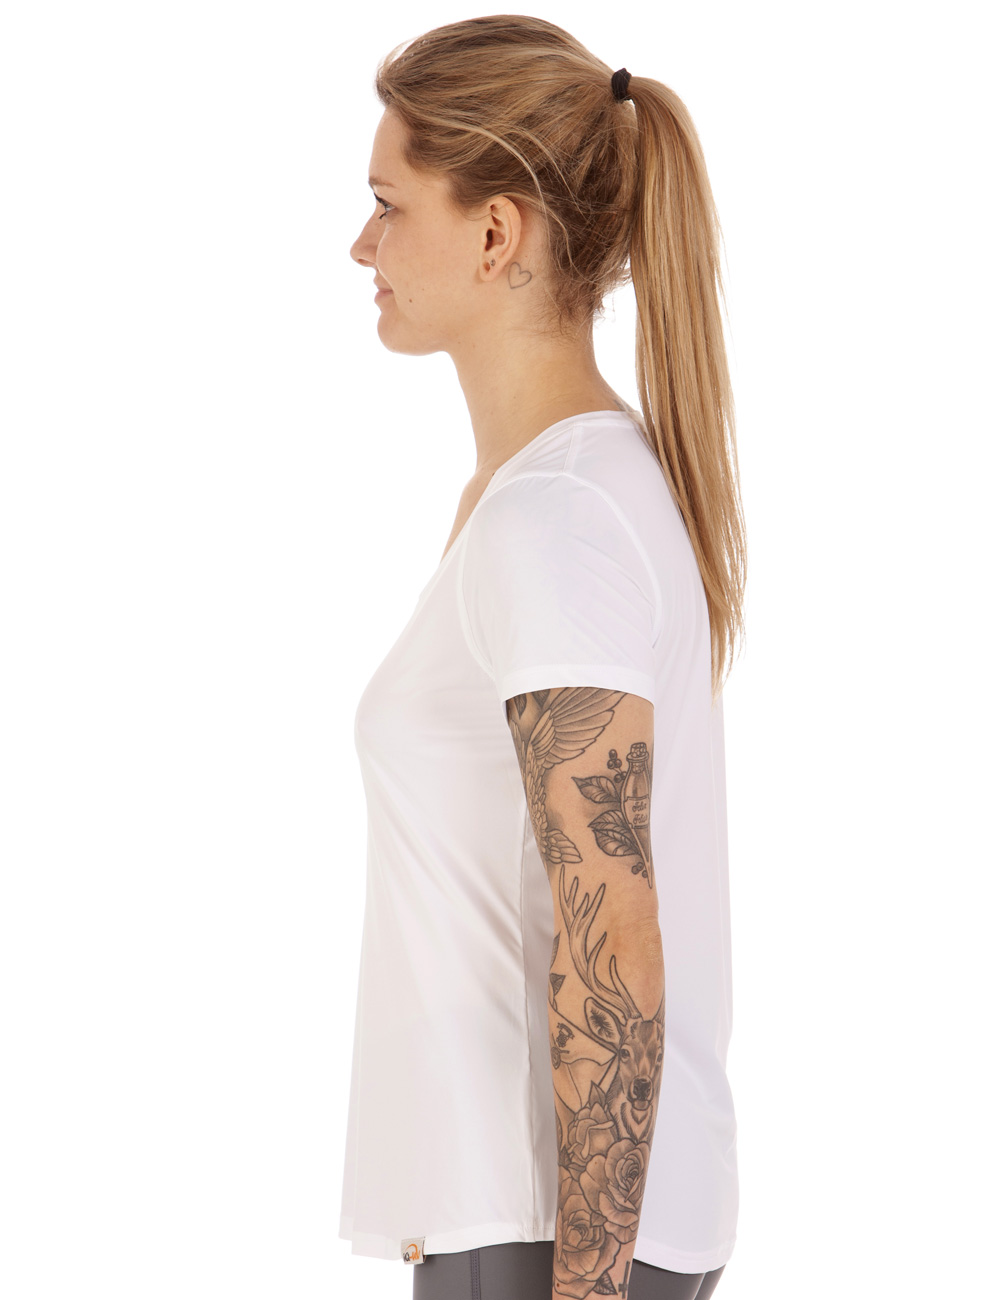 UV FREE Weitsicht shirt kurzarm weiß side